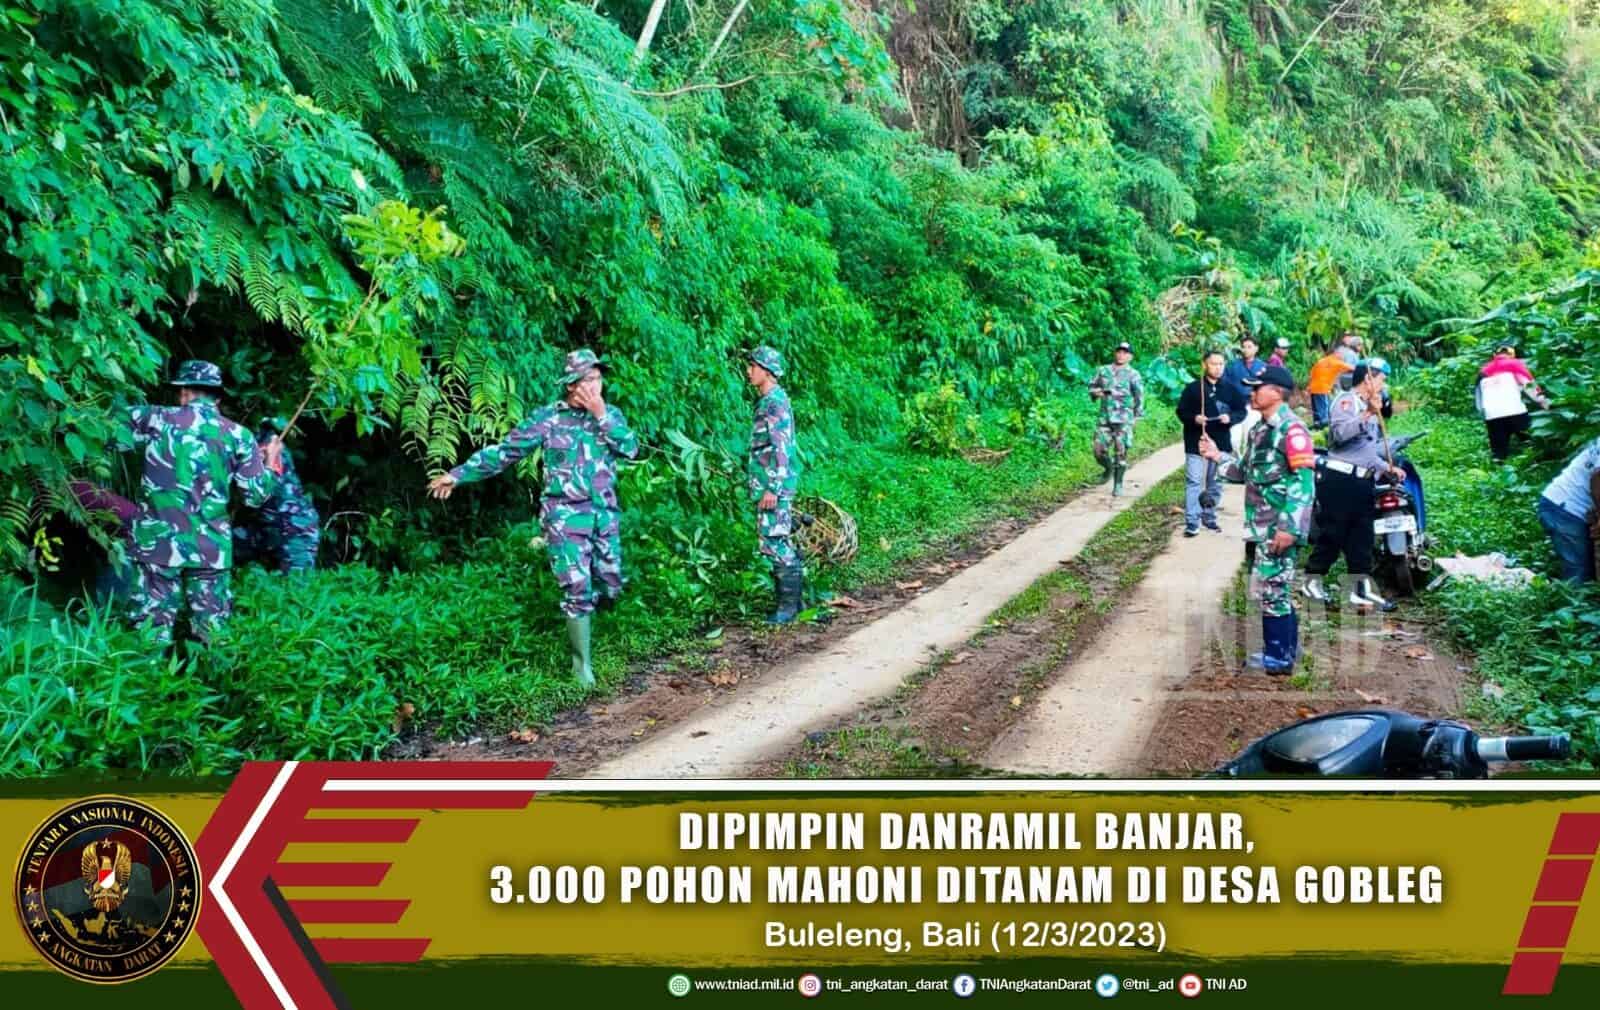 Dipimpin Danramil Banjar, 3.000 Pohon Mahoni Ditanam di Desa Gobleg